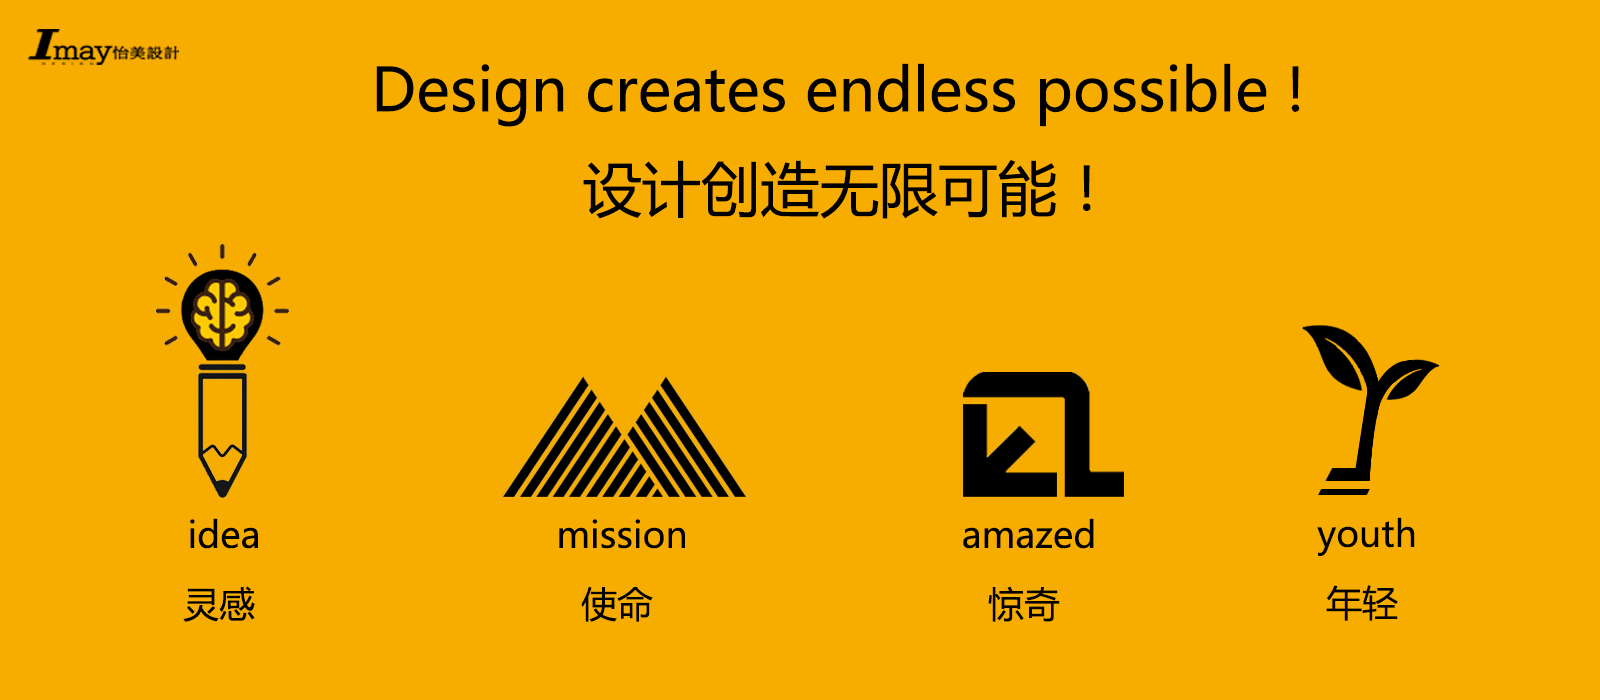 深圳产品设计外观设计公司;怡美工业设计